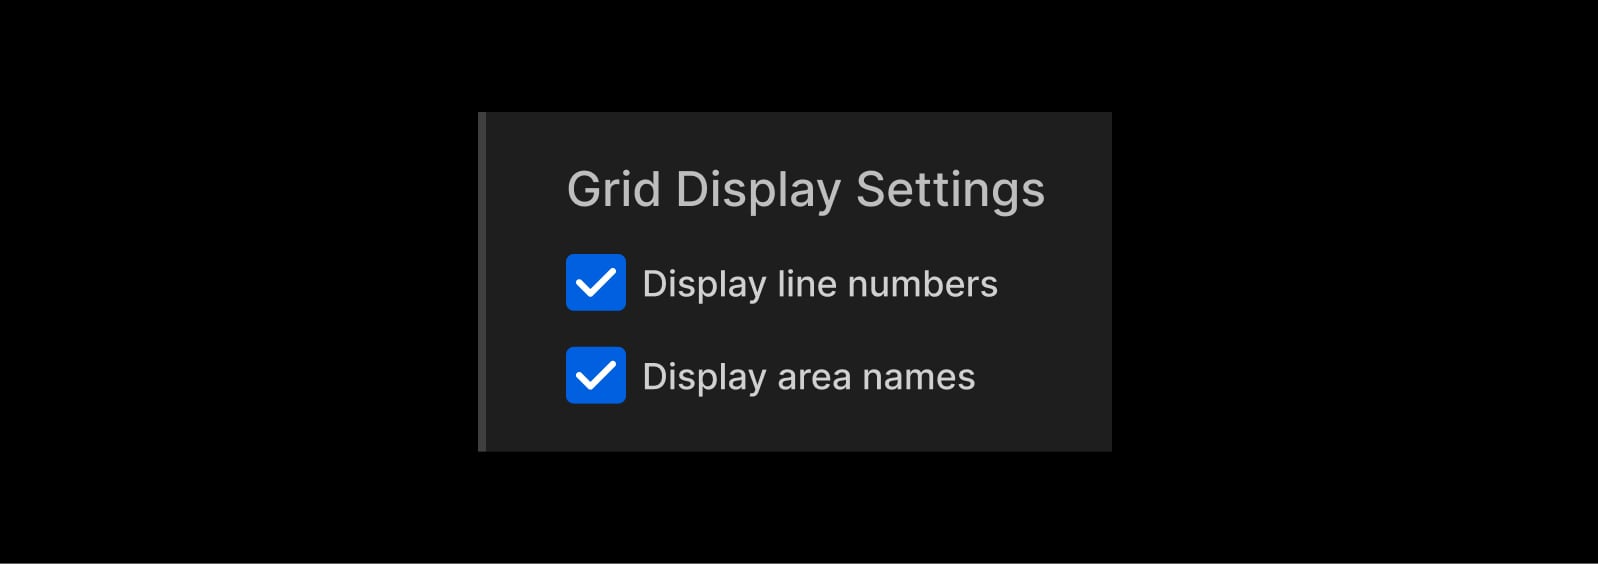 Enabling grid settings.